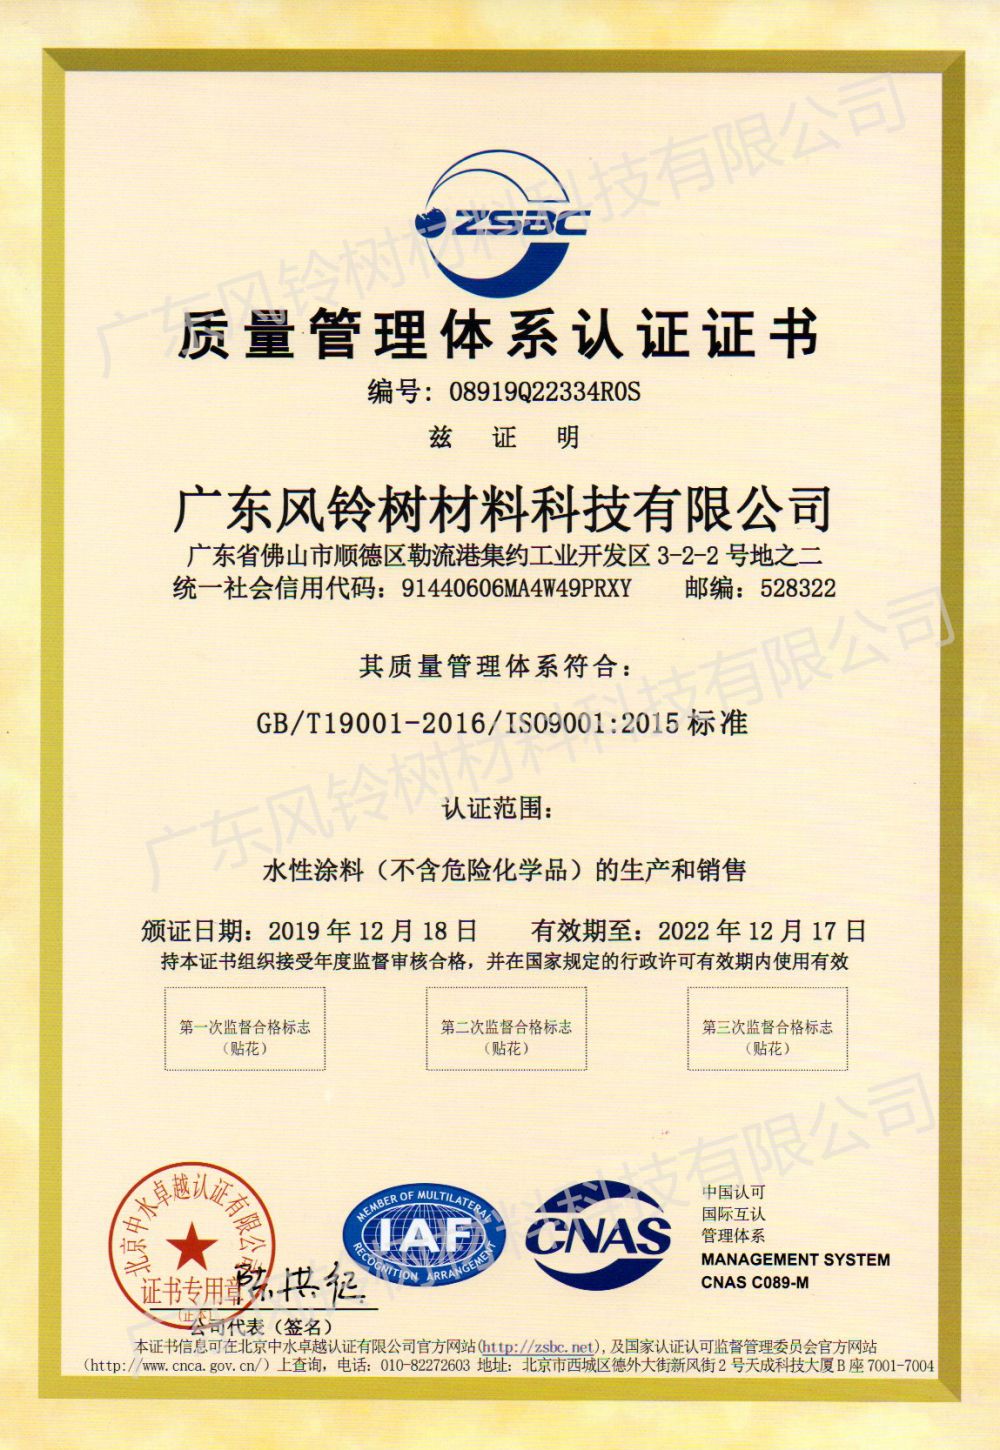 ISO90012015 ಗುಣಮಟ್ಟ ನಿರ್ವಹಣಾ ವ್ಯವಸ್ಥೆಯ ಪ್ರಮಾಣೀಕರಣ